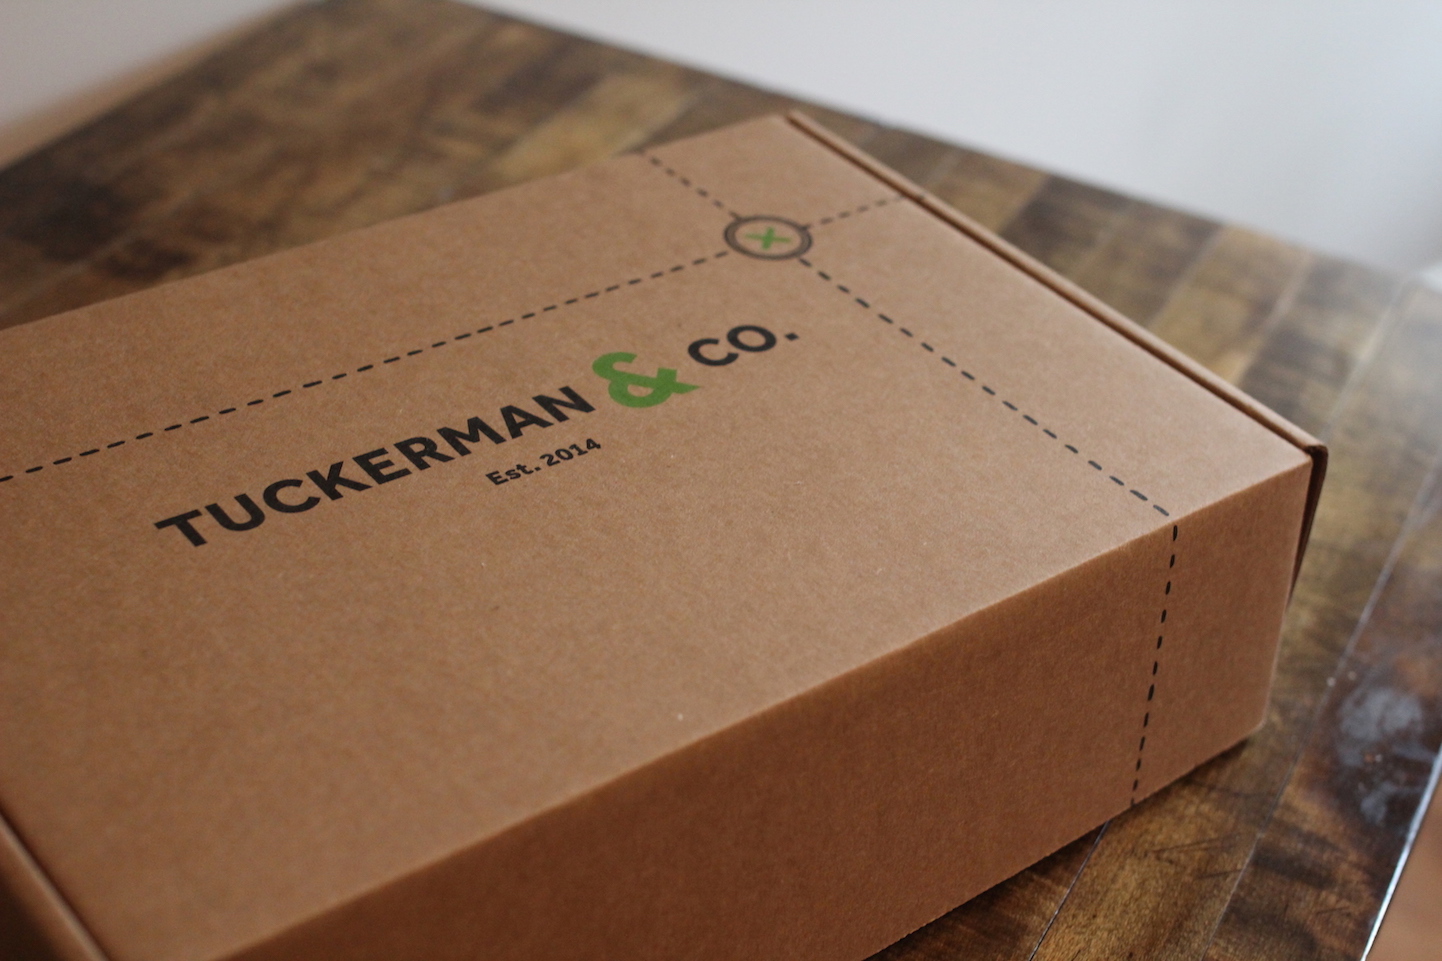 Tuckerman & Co Packaging